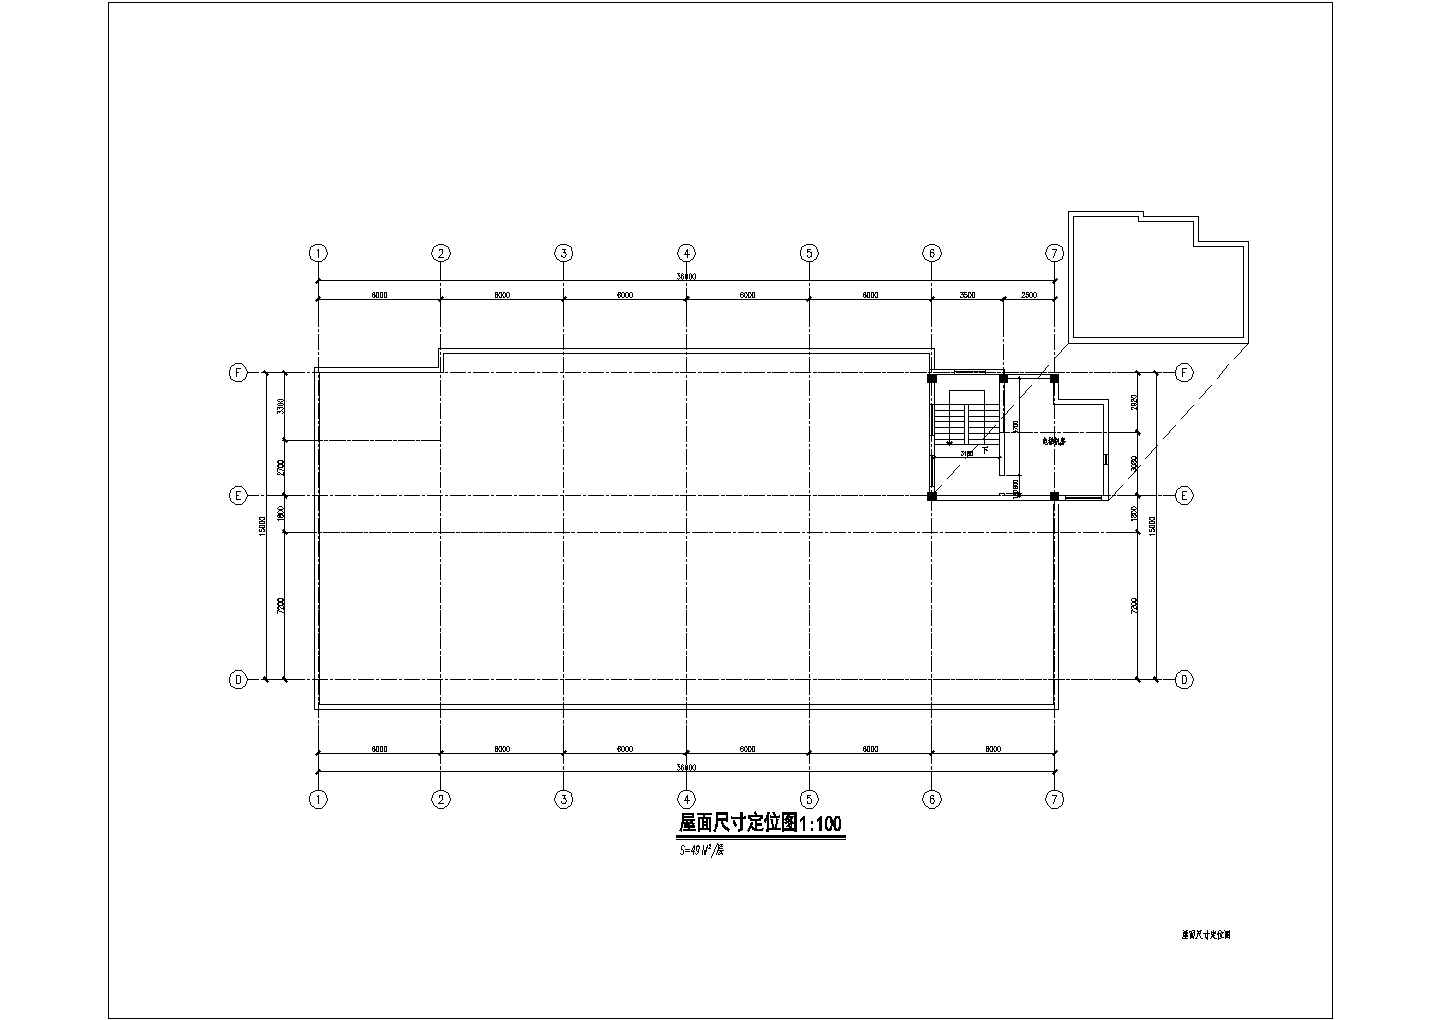 某宾馆装饰改造工程屋面尺寸CAD详细节点定位图